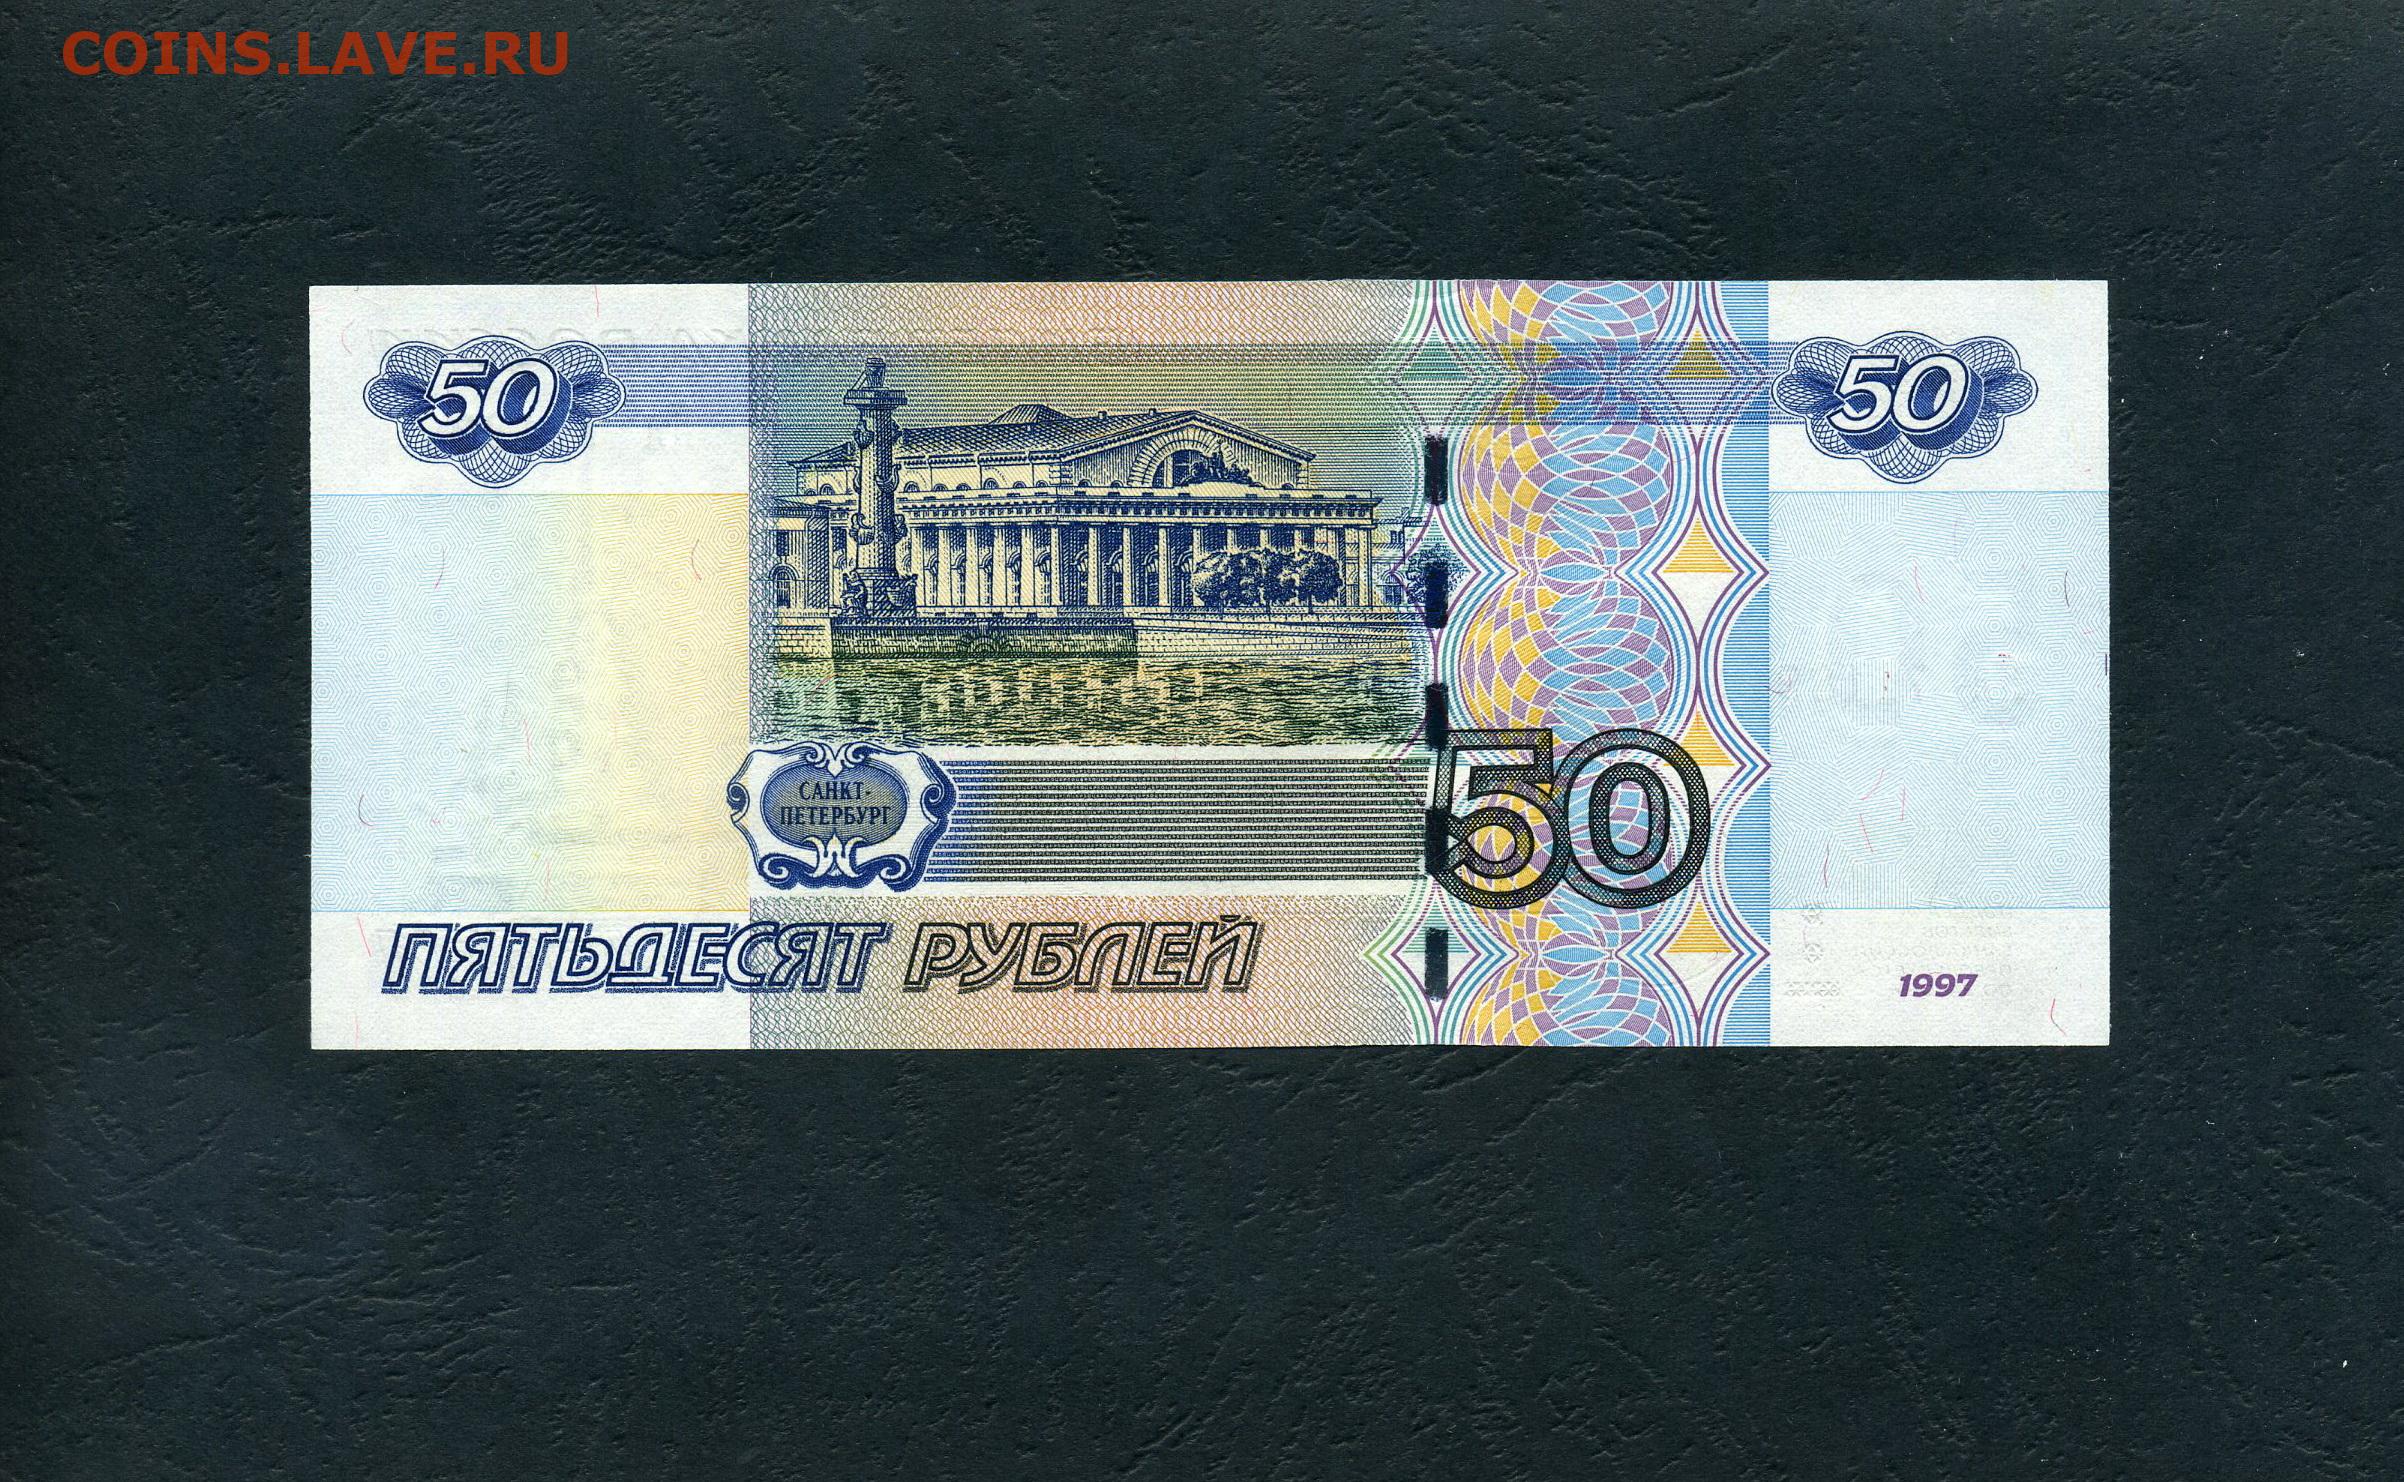 Сторона пятьдесят. Купюра 50 рублей. Пятьдесят рублей купюра. Банкнота 50 рублей. 50 Рублевая купюра.